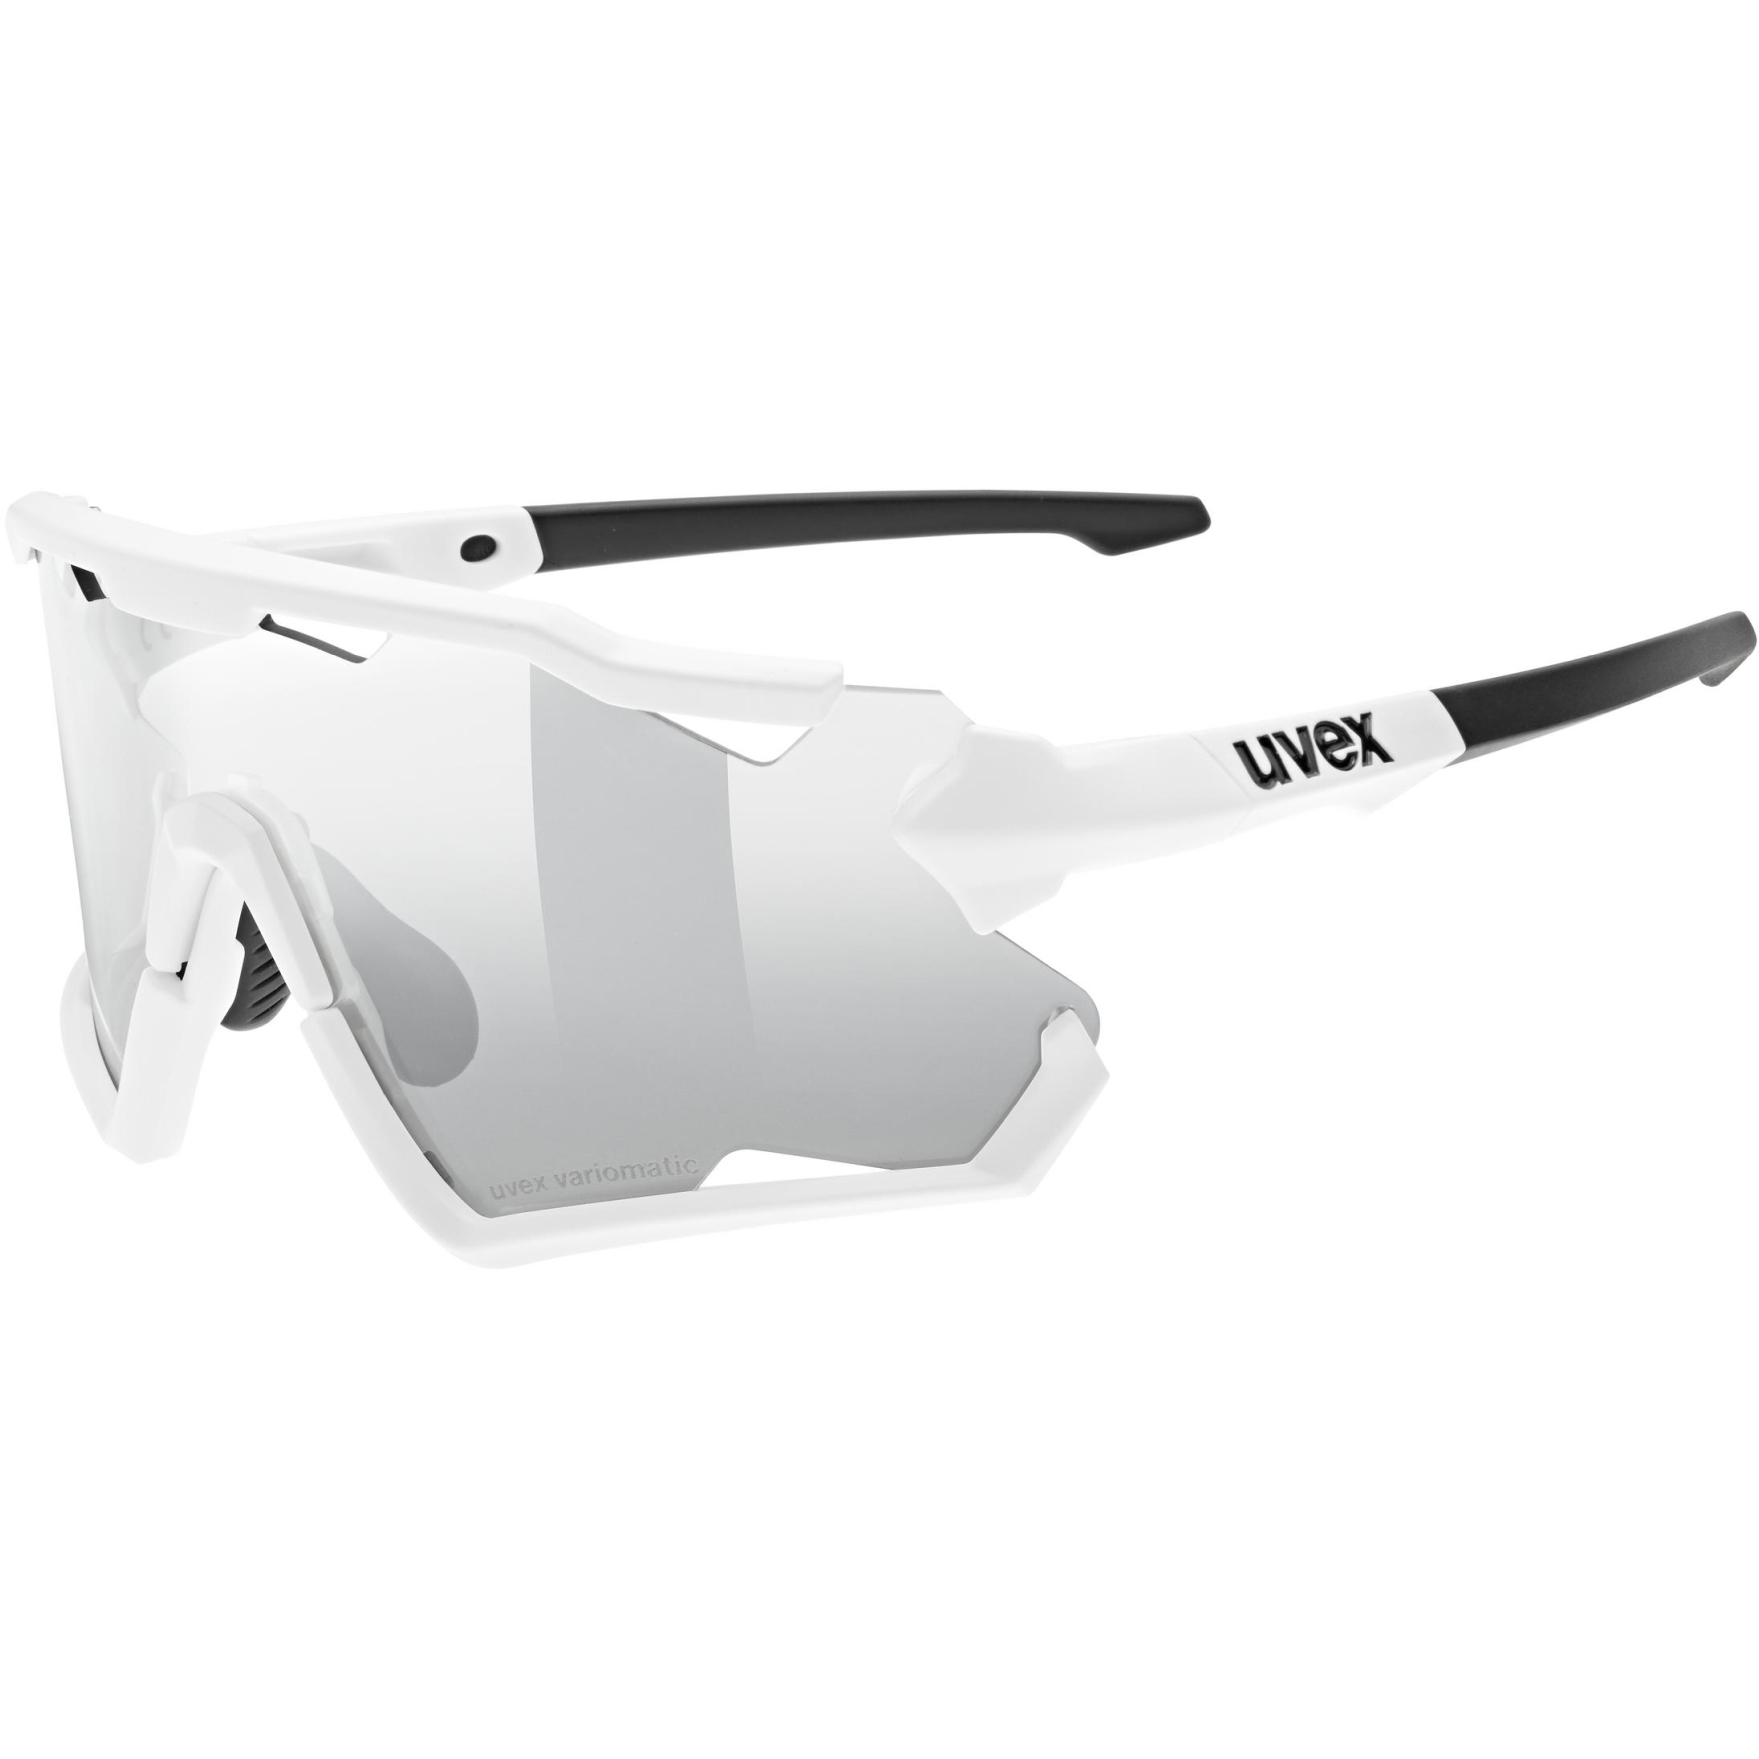 Produktbild von Uvex sportstyle 228 V Brille - white matt/variomatic litemirror silver